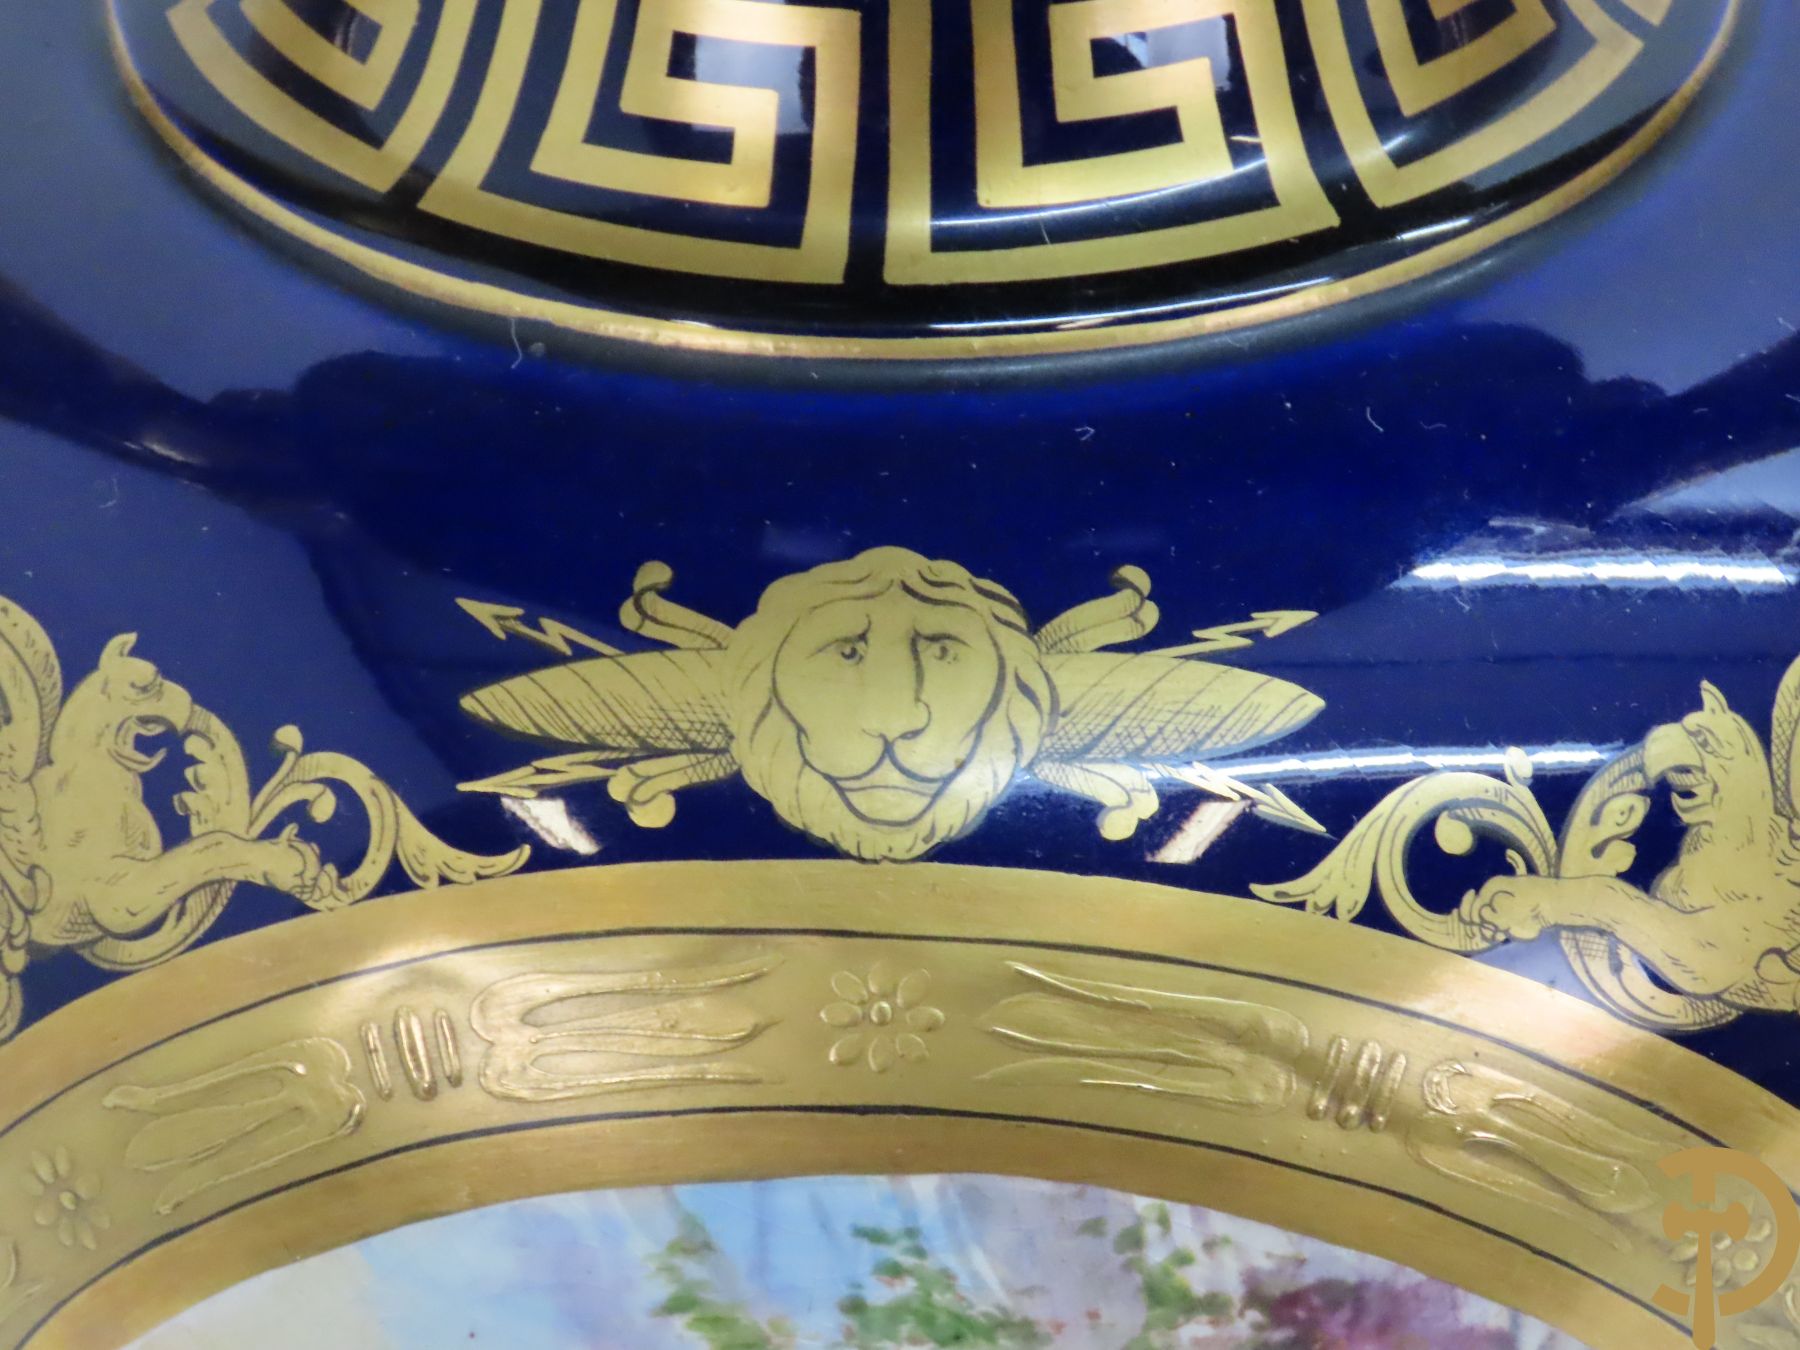 Paar kobaltblauwe vazen met romantische scènes, deels verguld - met 2 oren en leeuwenkoppen opzij, G.Etemod getekend